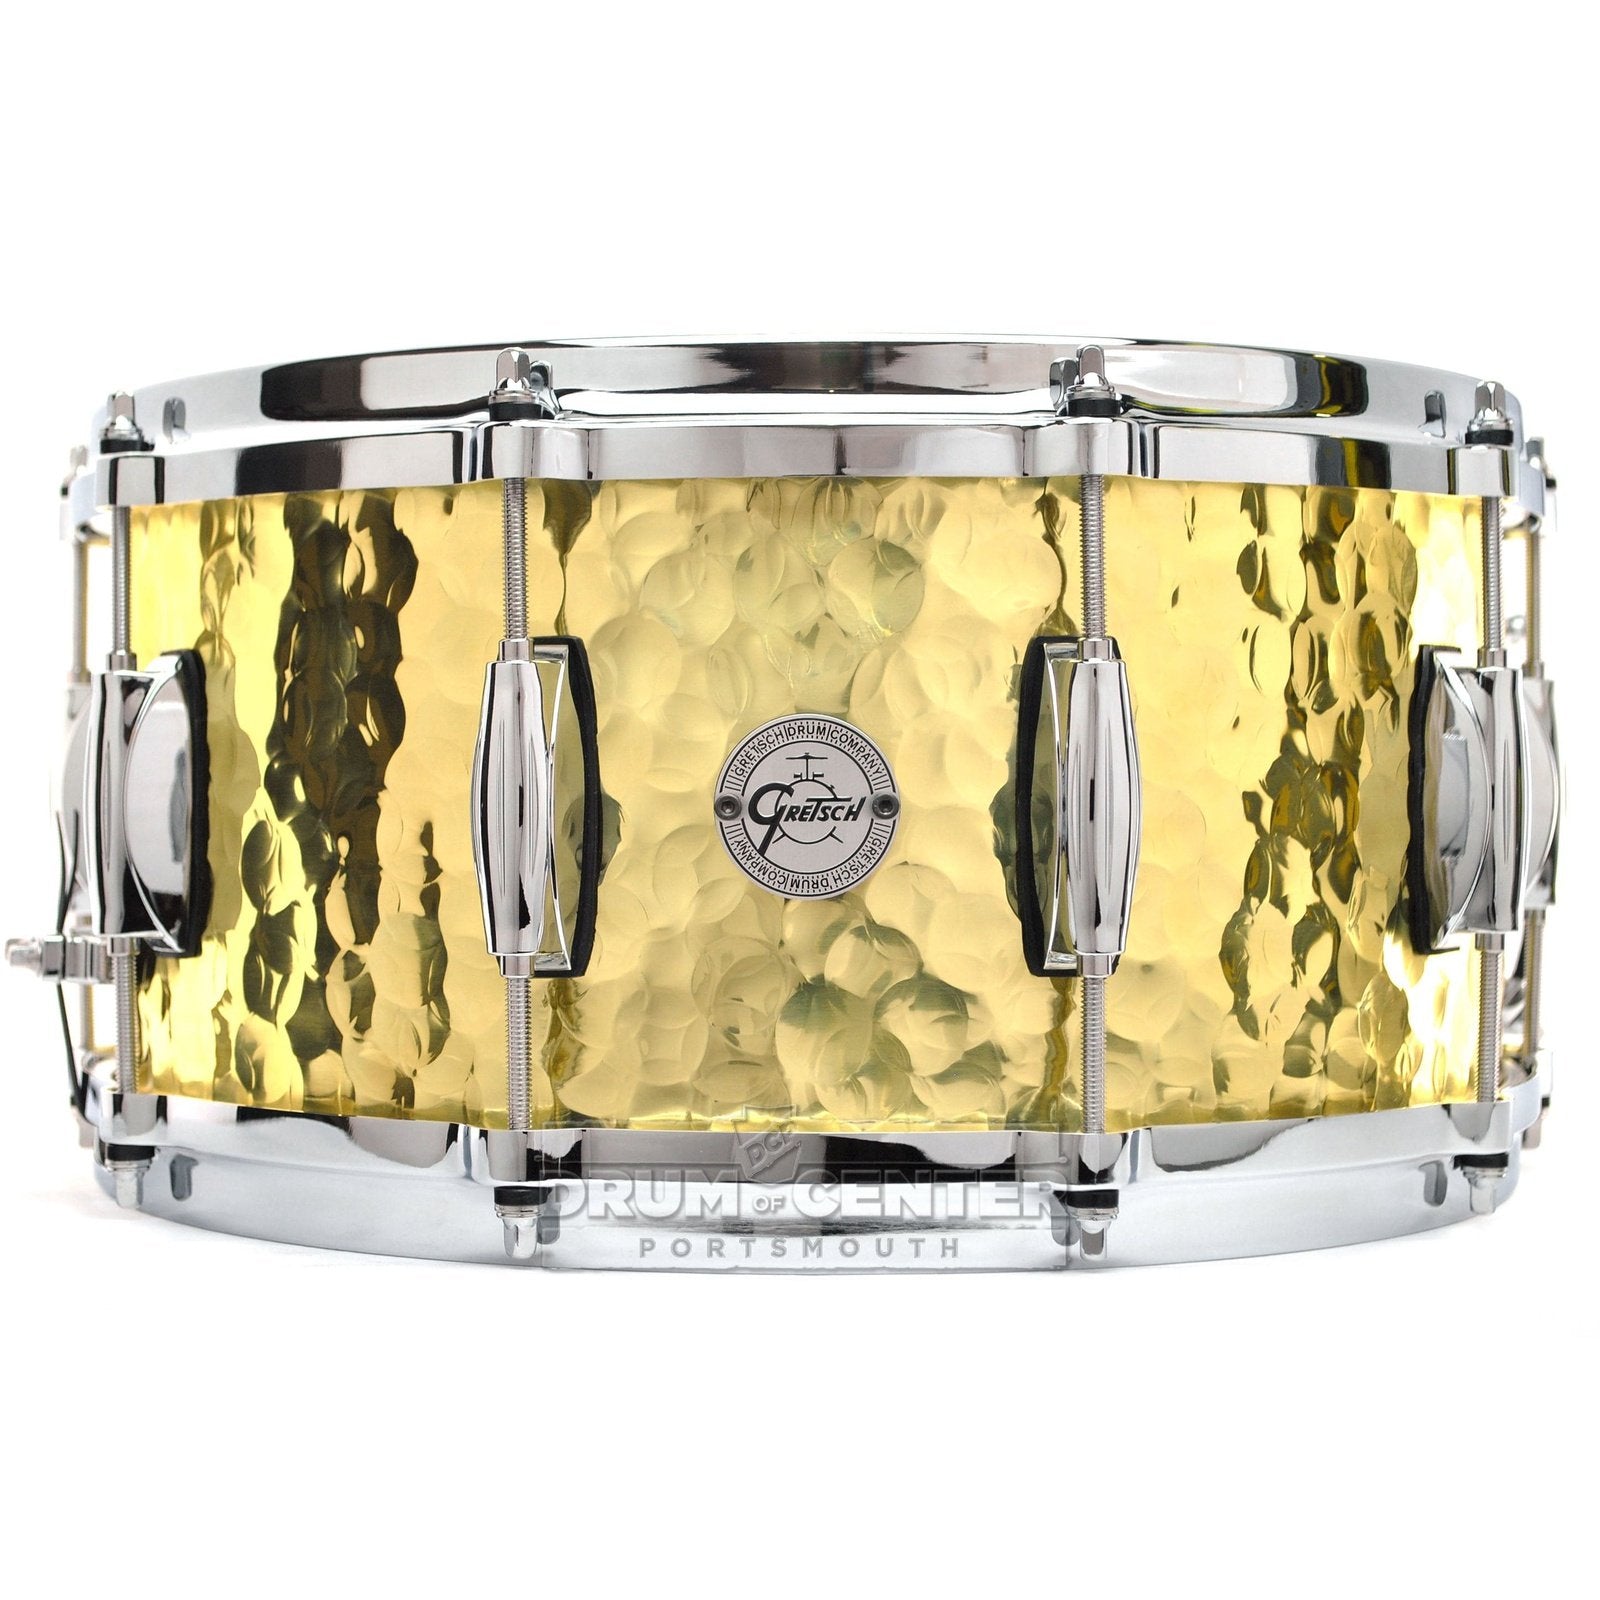 Gretsch Full Range Hammered Brass Snare Drum 14x6.5